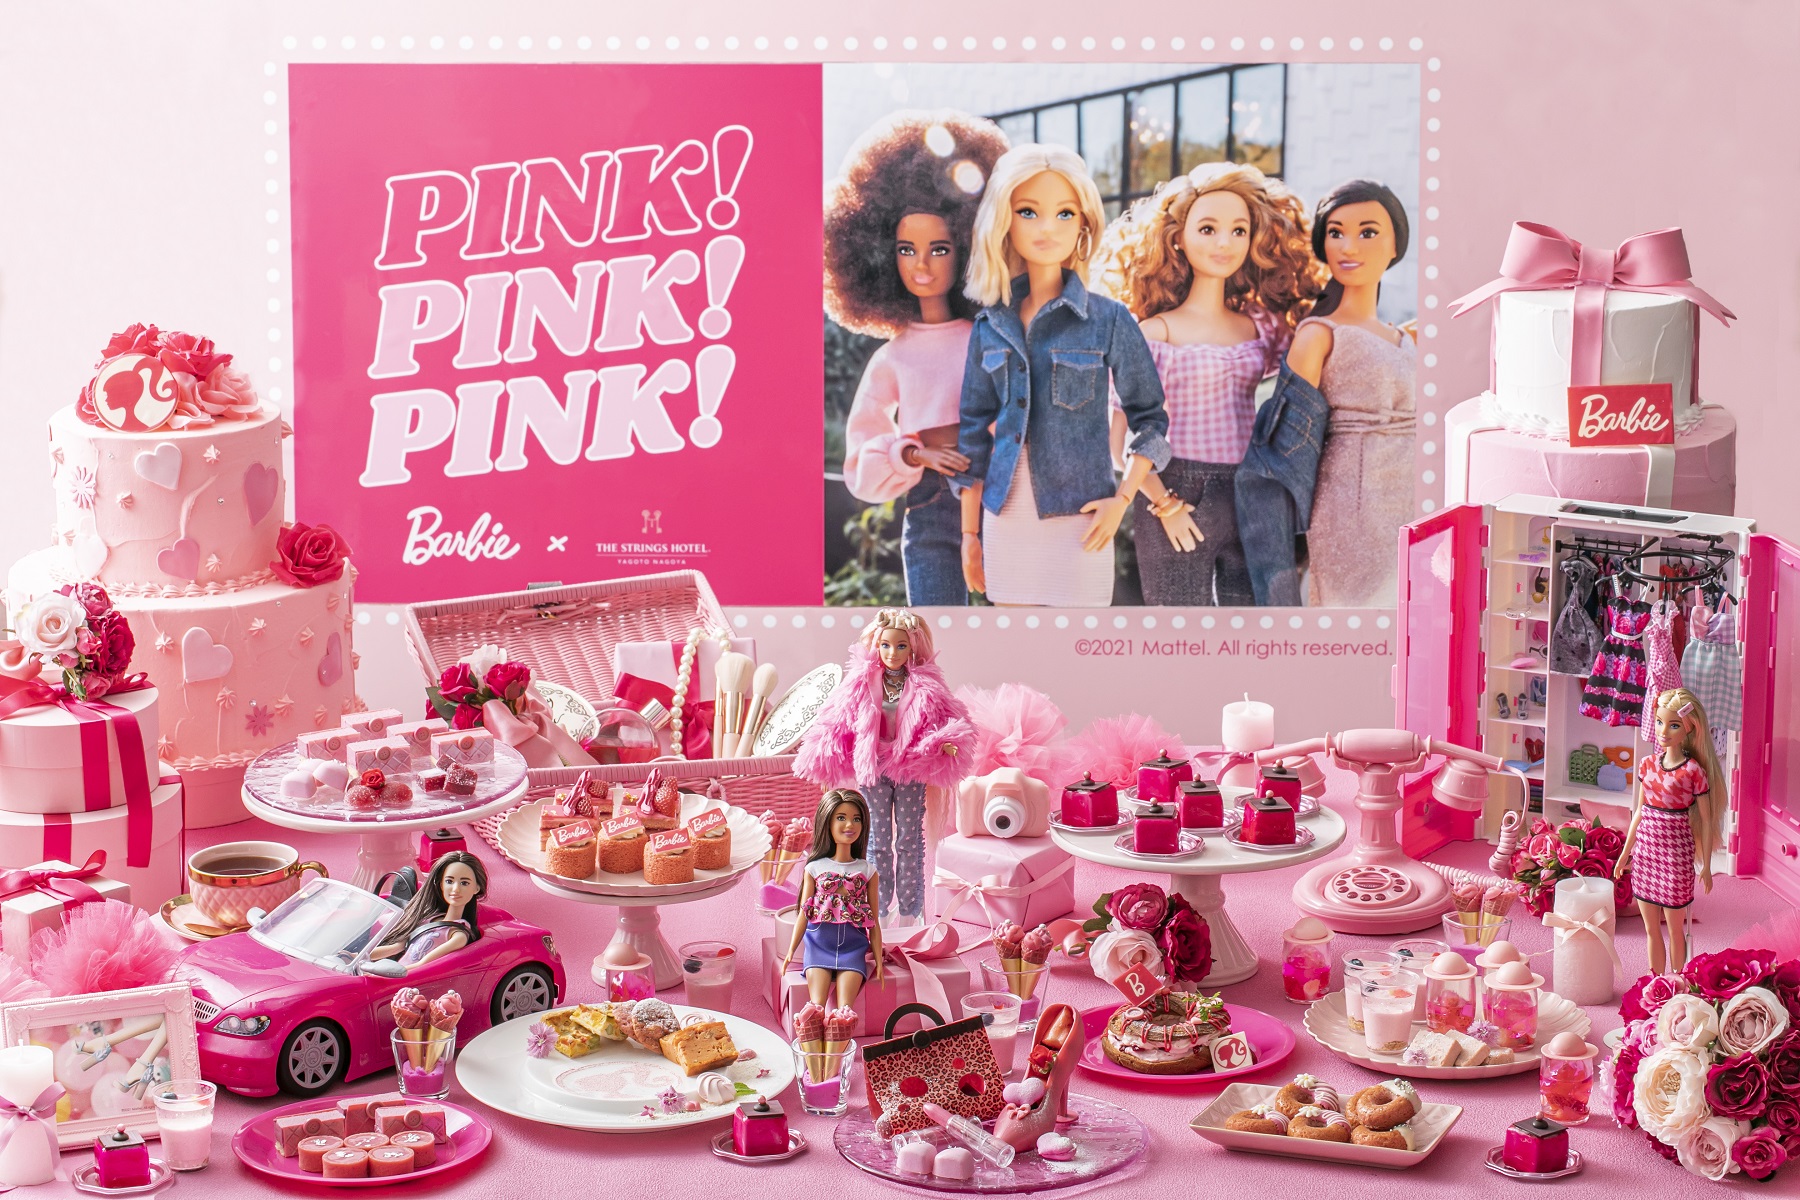 ファッションドール バービー とコラボレーションしたピンクの可愛らしいスイーツが食べ放題のイベント開催 Pink Pink Pink スイーツパーティー Newscast